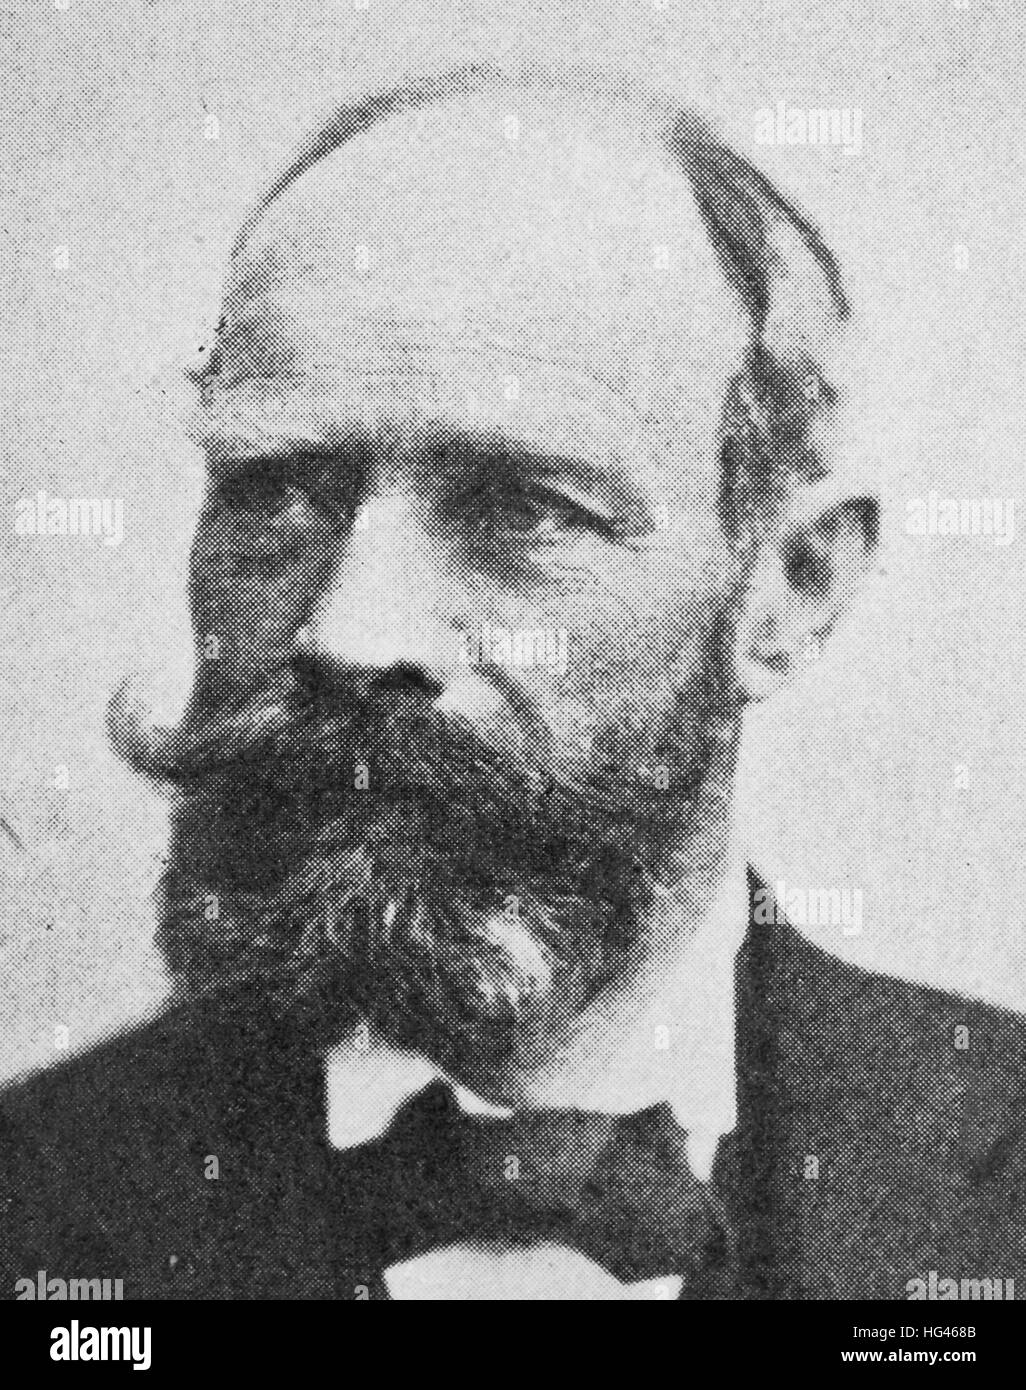 Emil Kirdorf, 8 avril 1847 - 13 juillet 1938, était un industriel allemand, l'un des premiers grands employeurs dans les secteurs industriels de la Ruhr, reproduction d'une photo de l'année 1895, l'amélioration numérique Banque D'Images